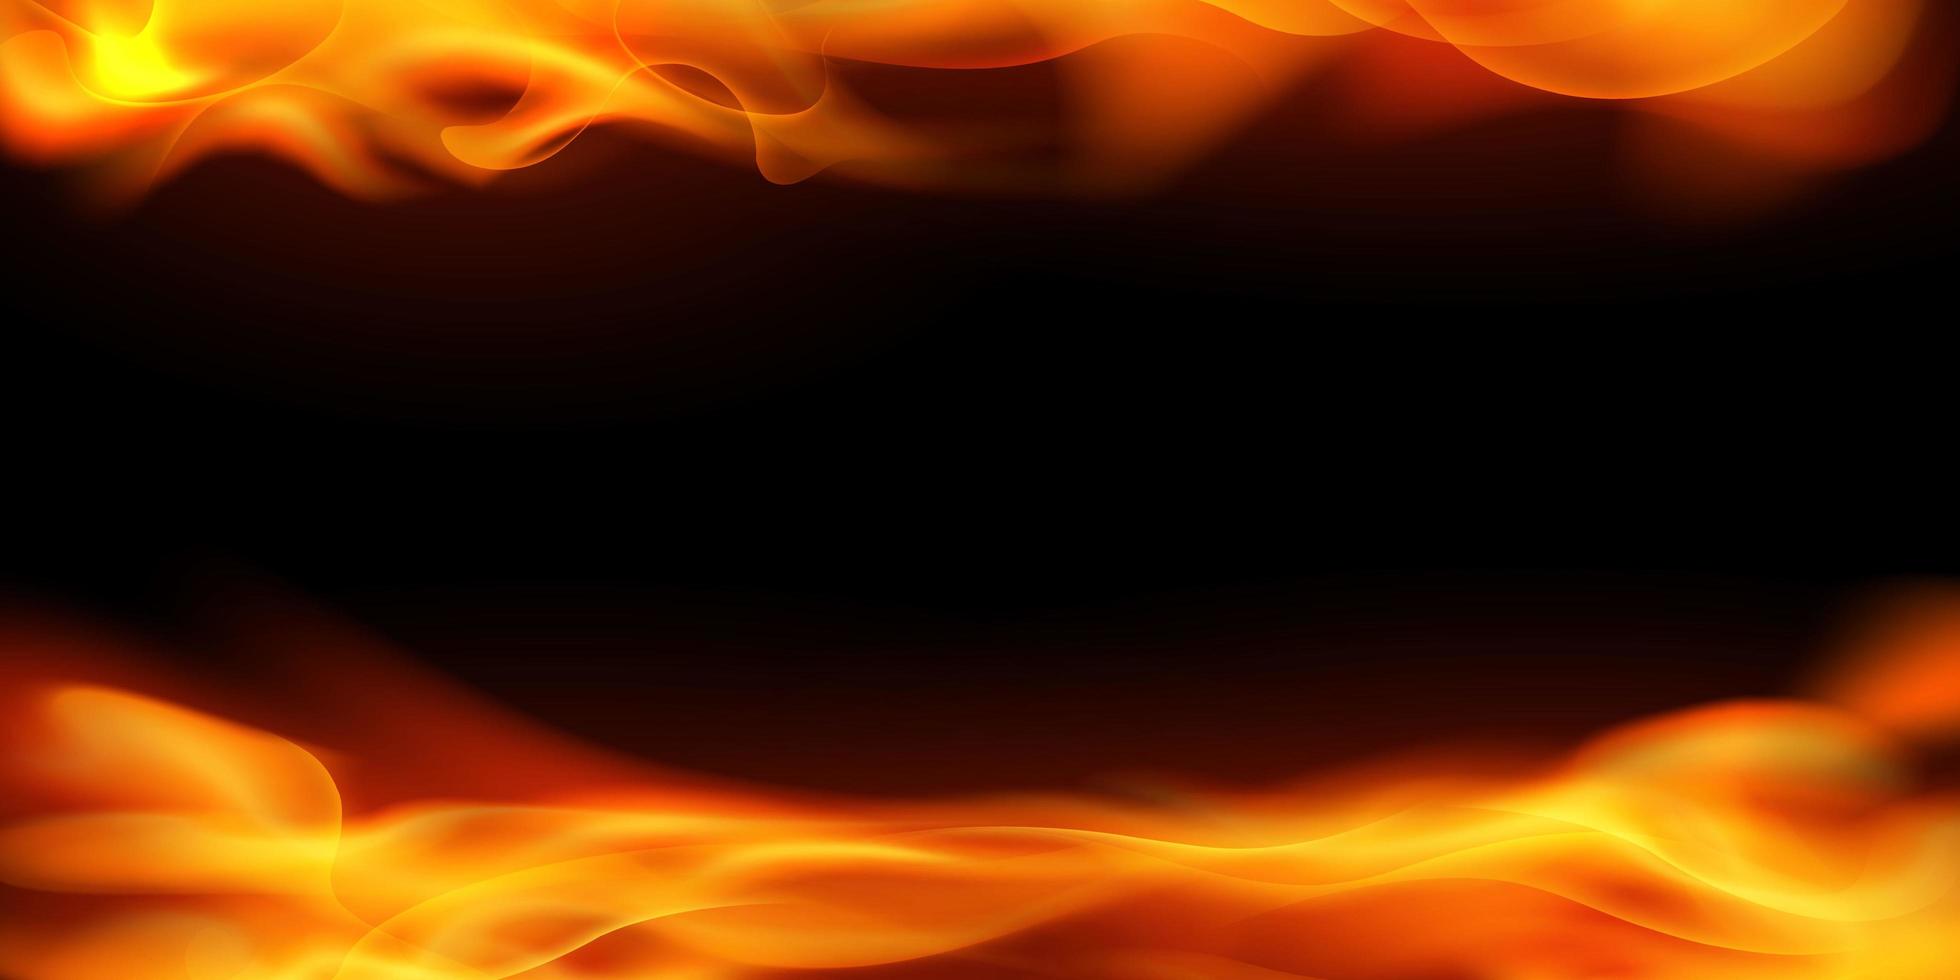 efecto quemando chispas al rojo vivo llamas de fuego realistas fondo abstracto vector